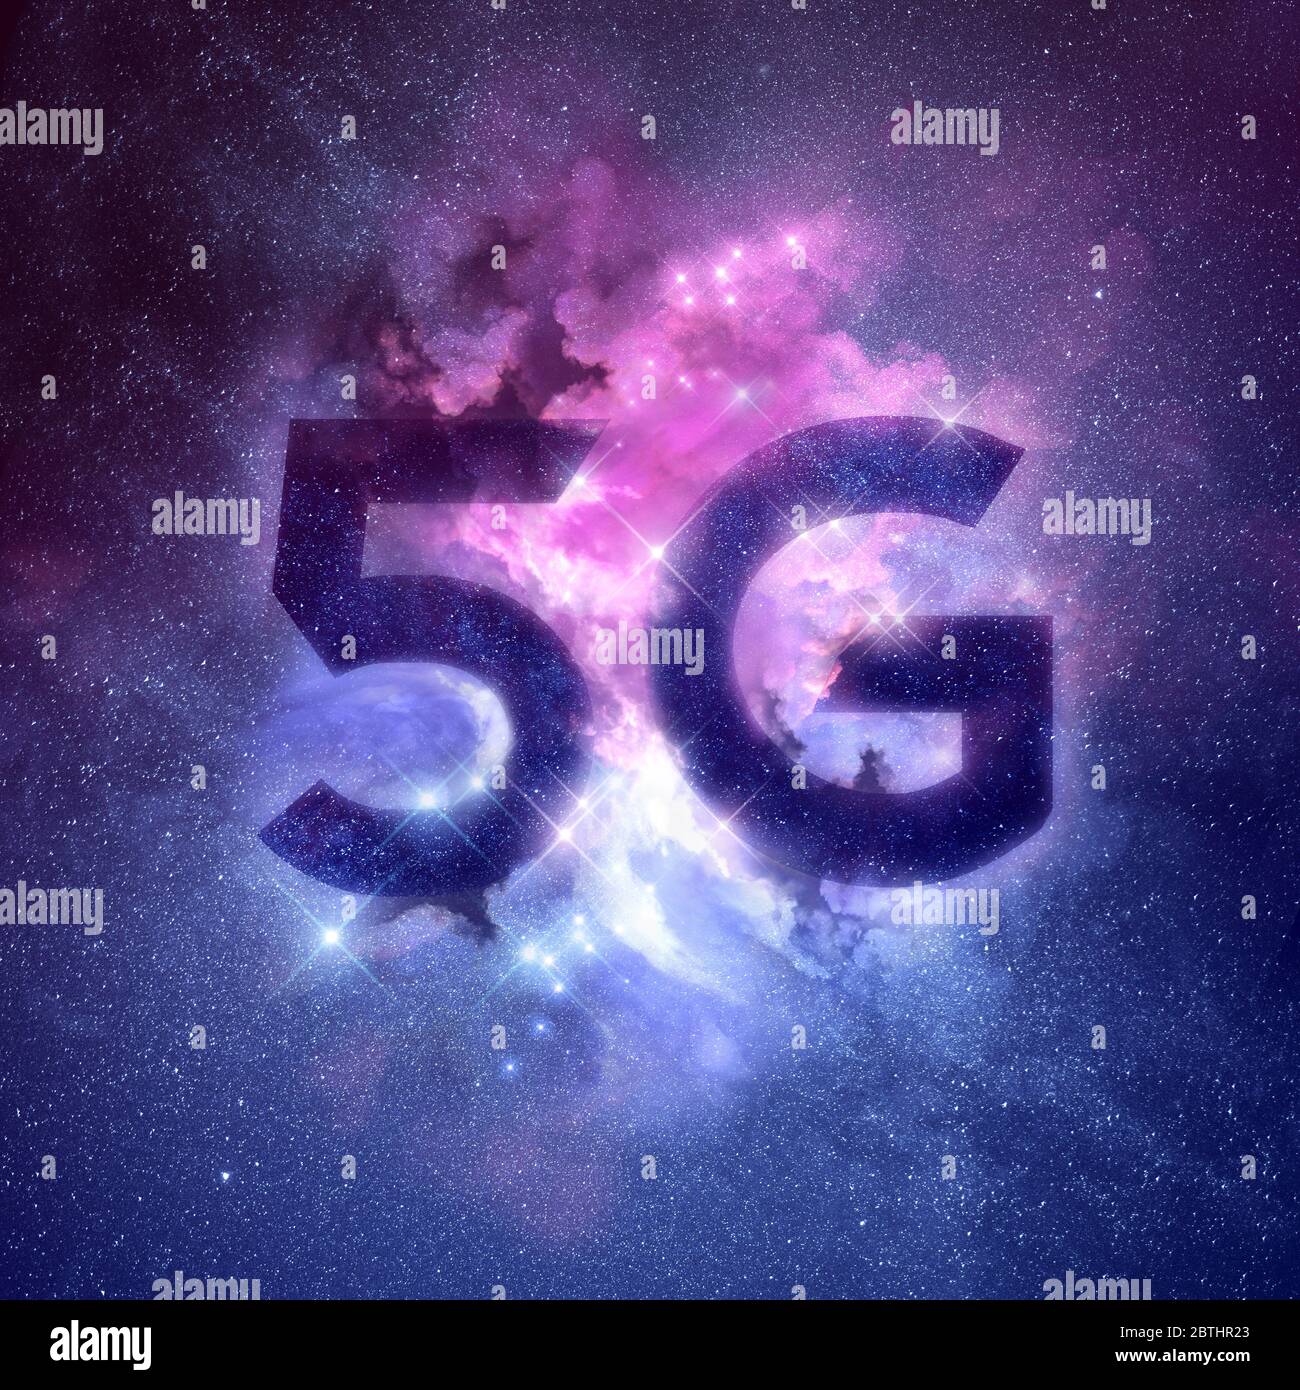 Une nébuleuse galaxie avec 5G écrite dans les étoiles. Concept de technologie de mise en réseau mobile sans fil Fast 5G. Illustration. Banque D'Images